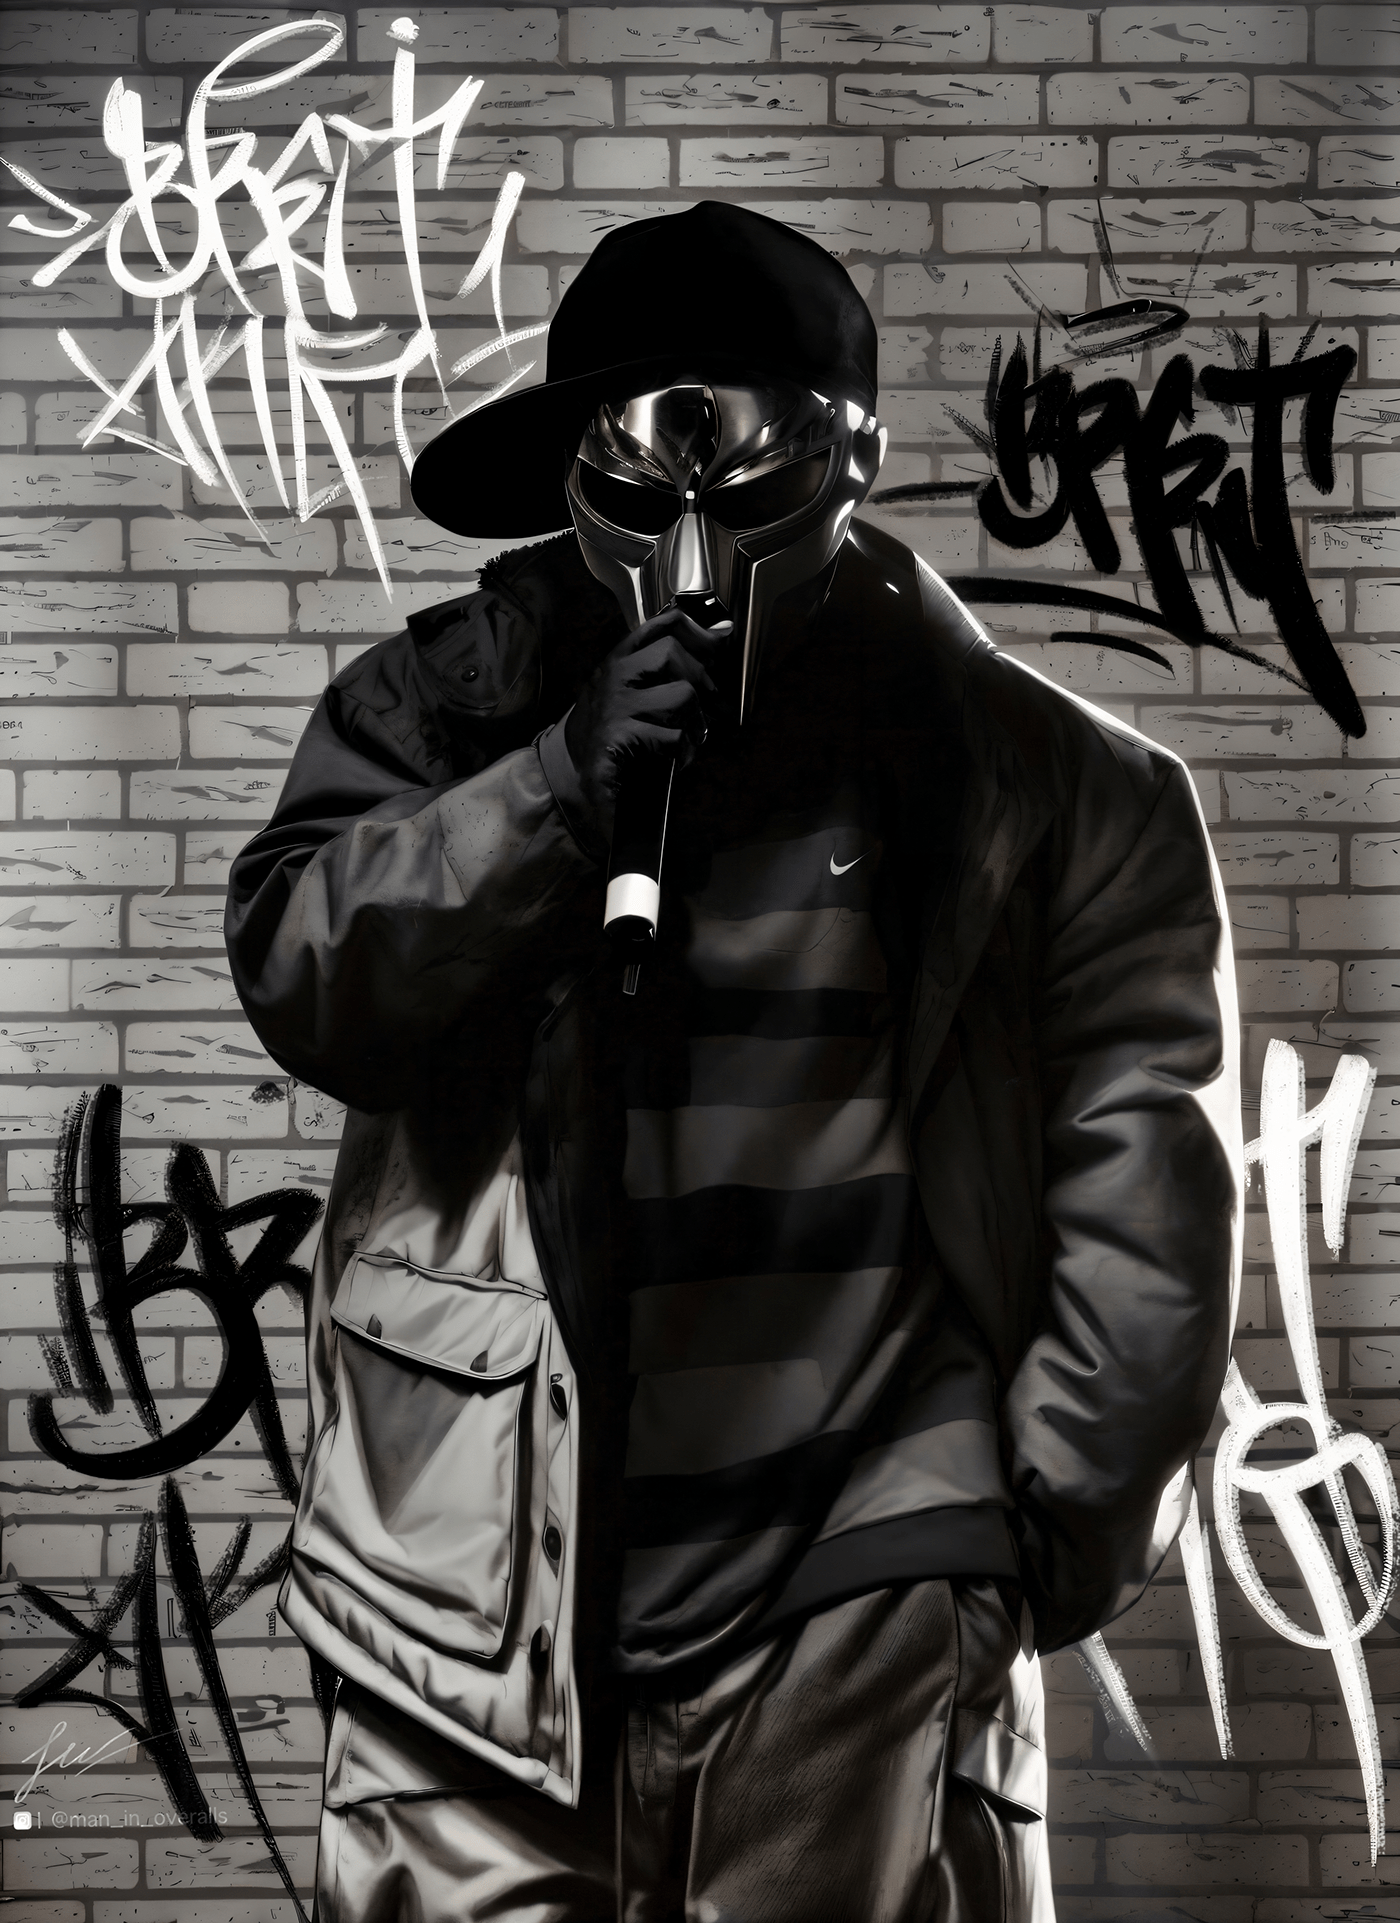 Graffiti Undeground tagging black and white rap Fashion  tag